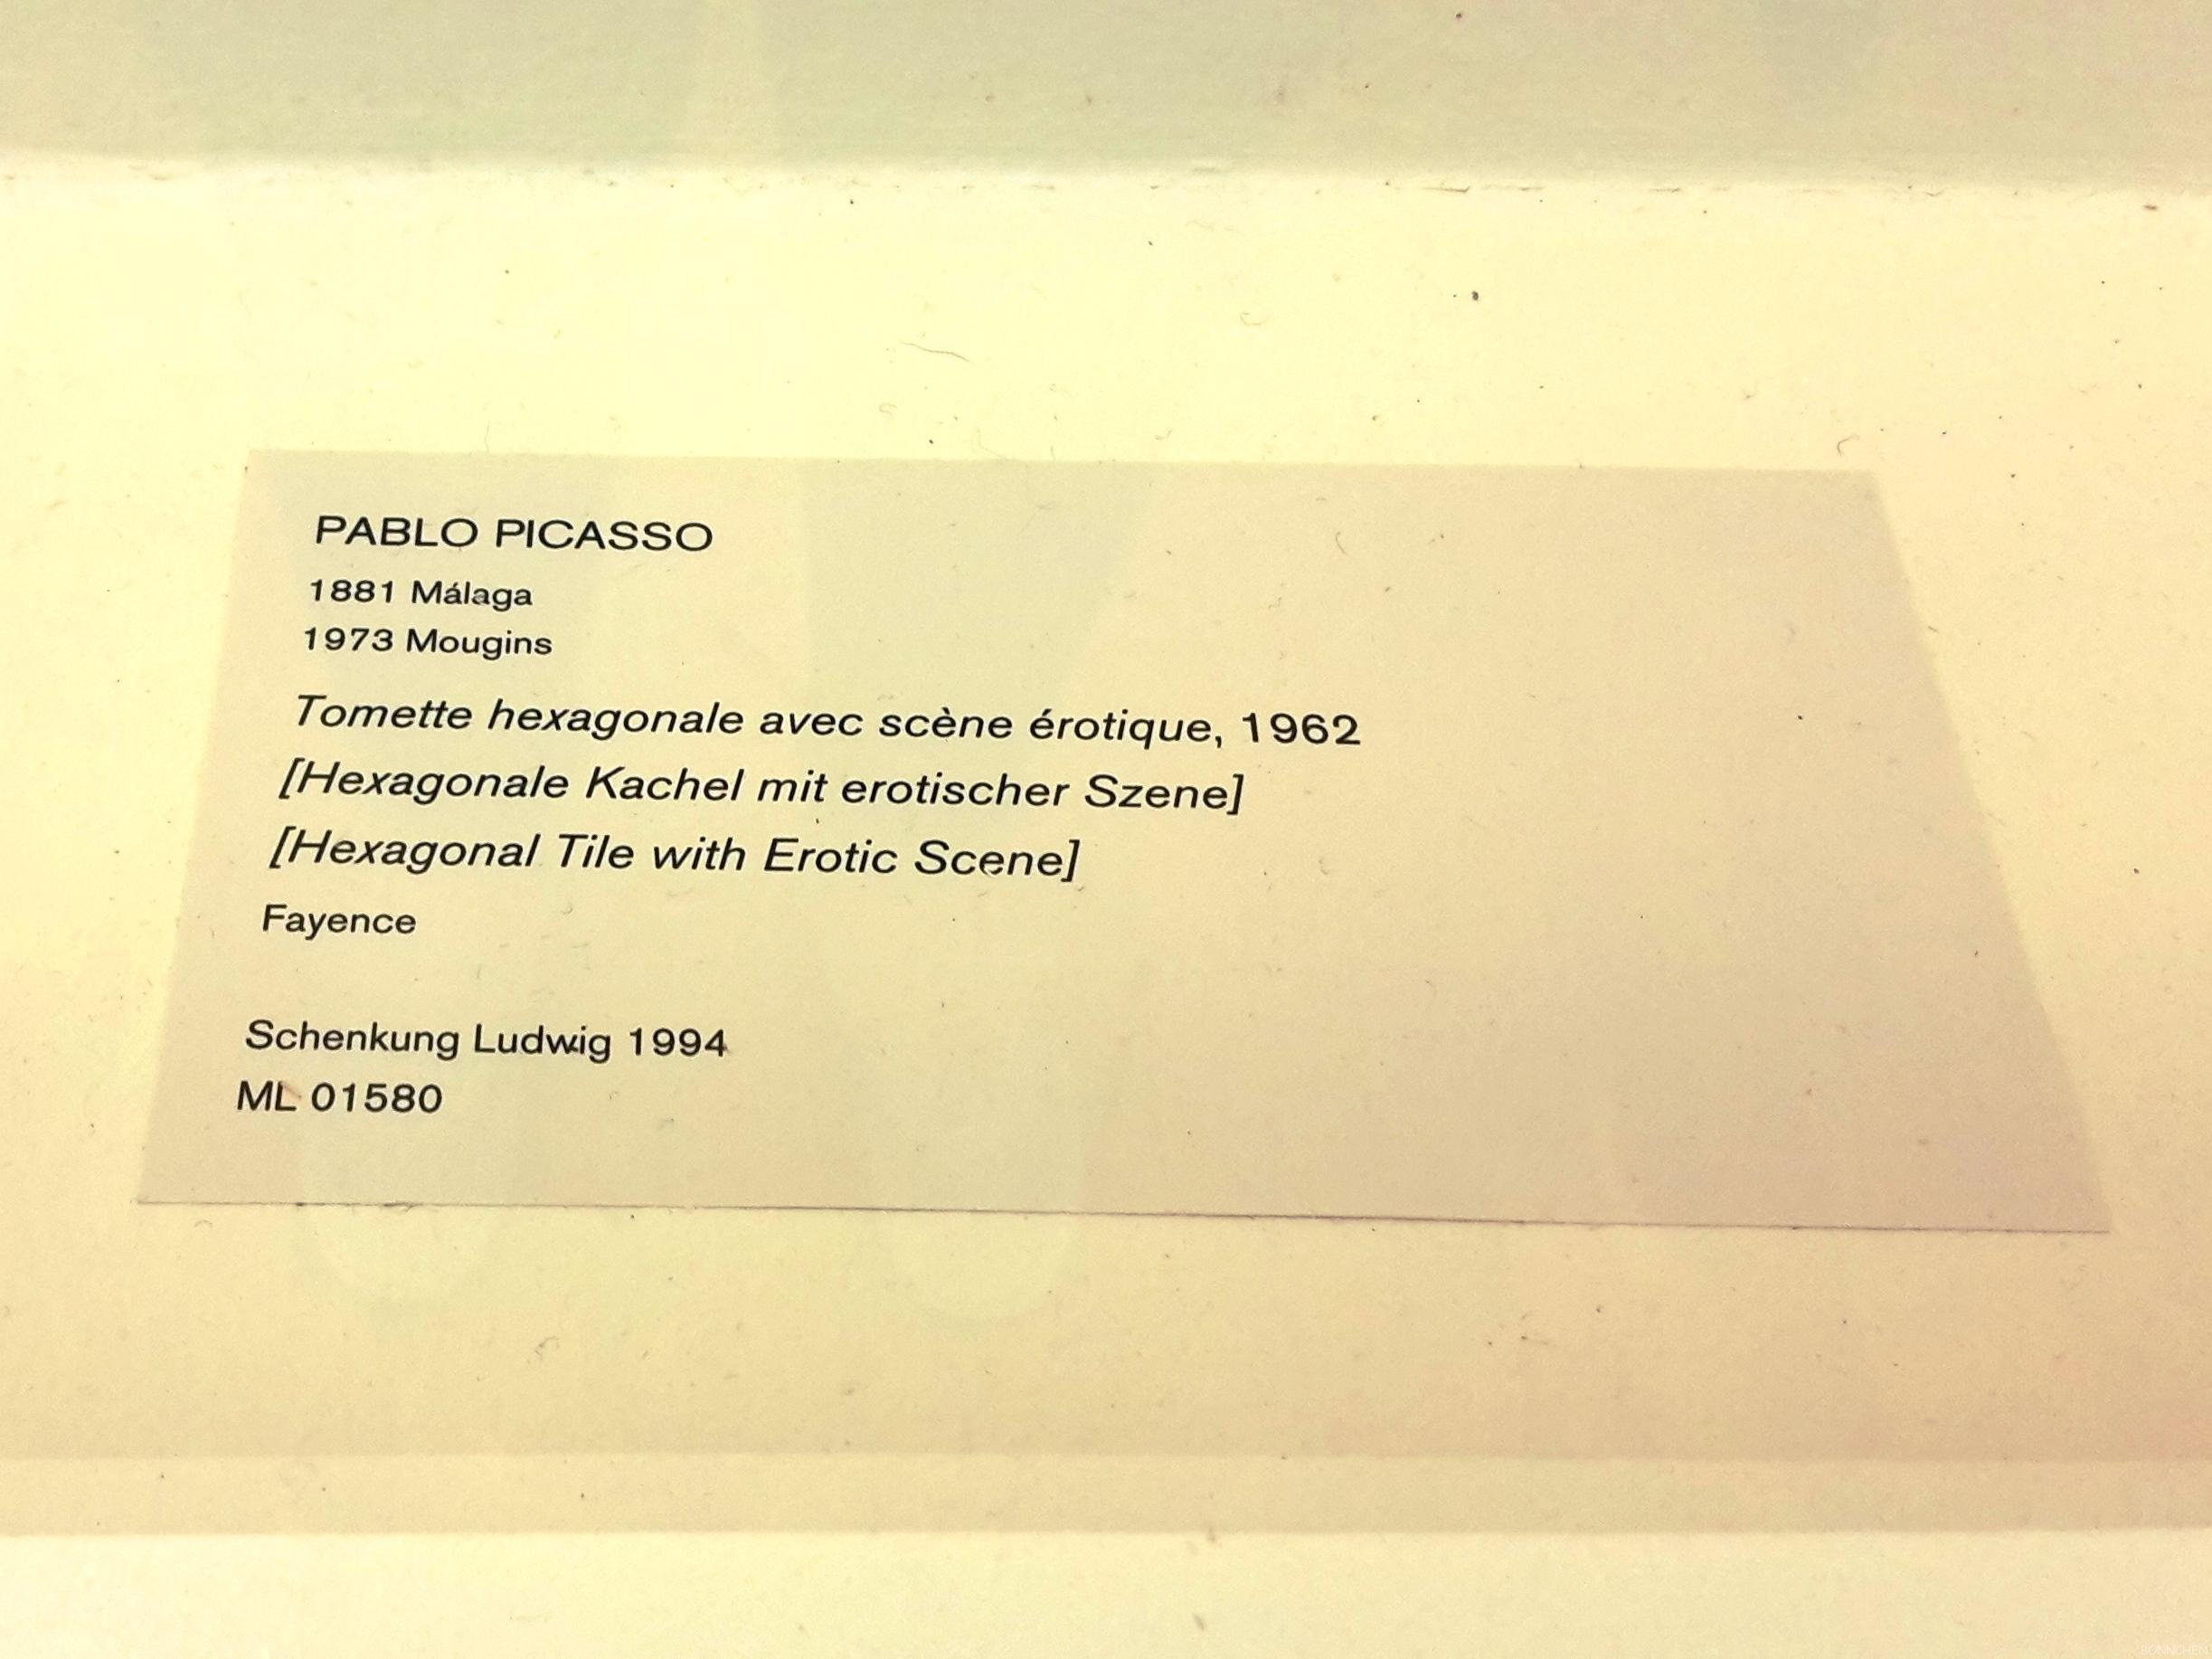 Beschreibung vom Gemälde von Pablo Picasso im Museum Ludwig – Hexagonale Kachel mit erotischer Syene von 1962